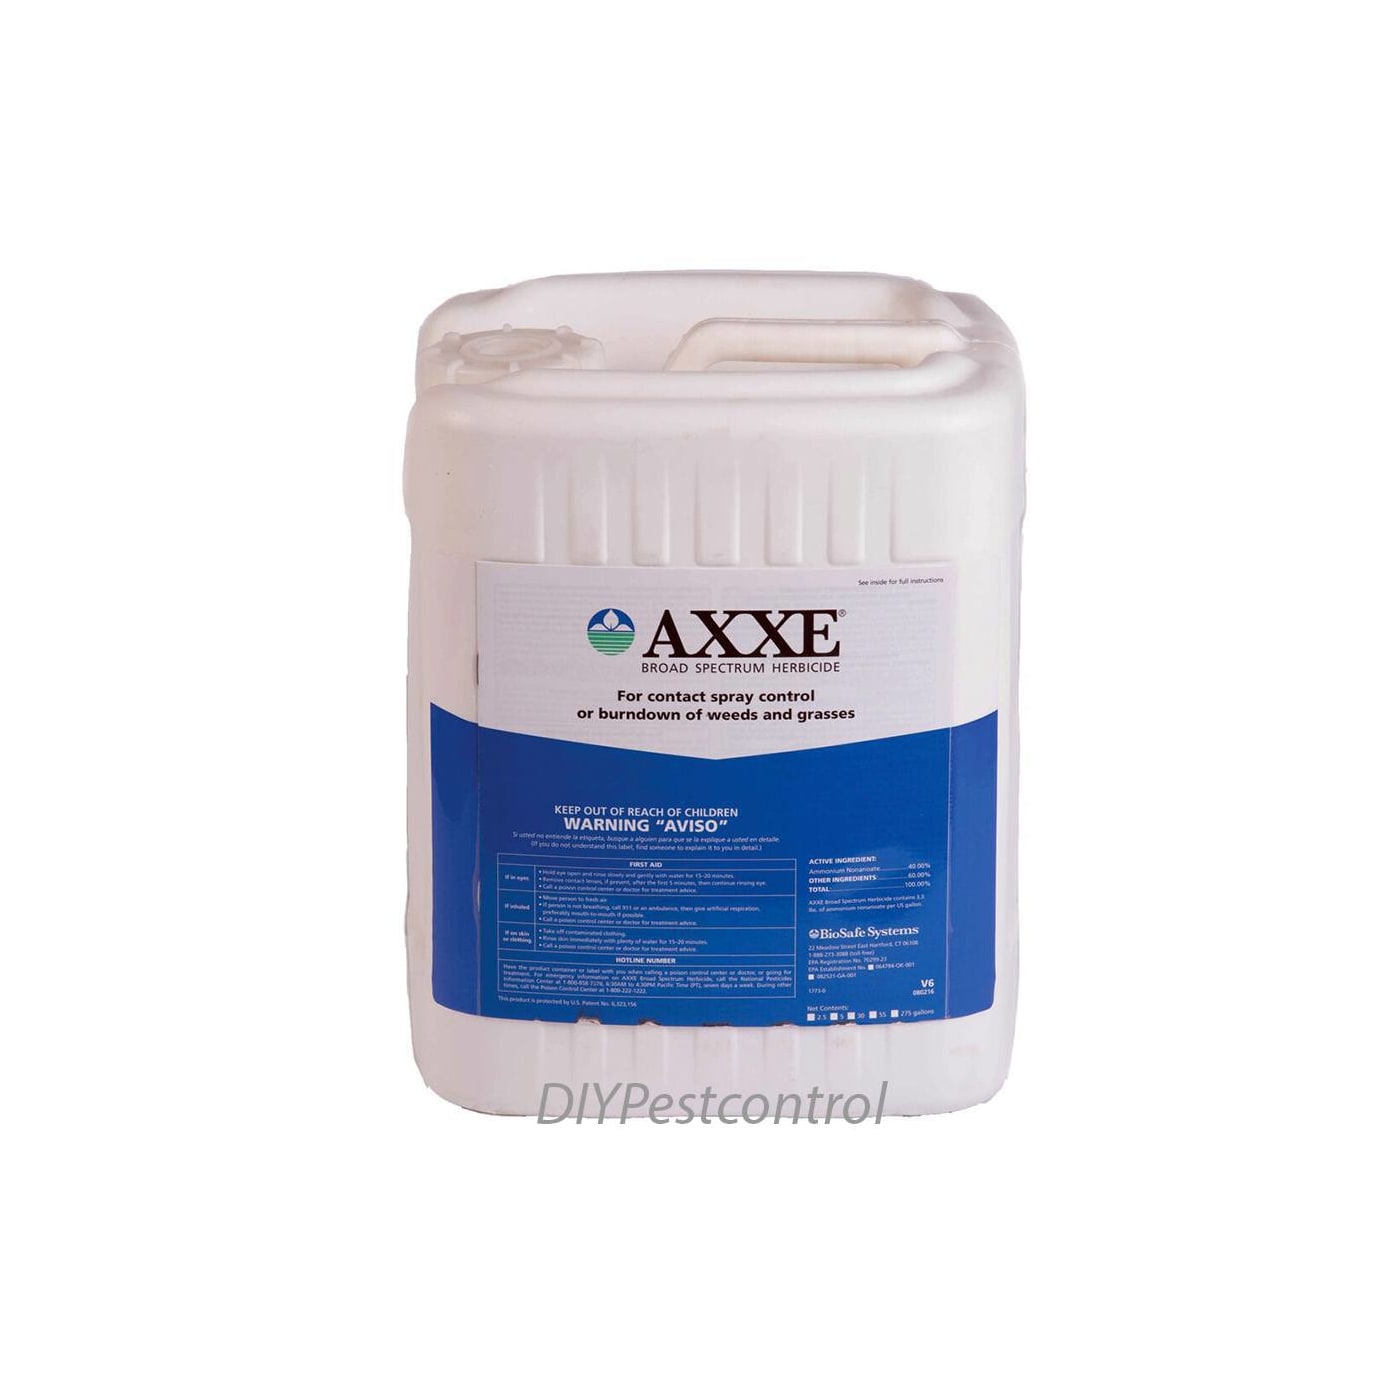 Axxe Broad Spectrum Herbicide